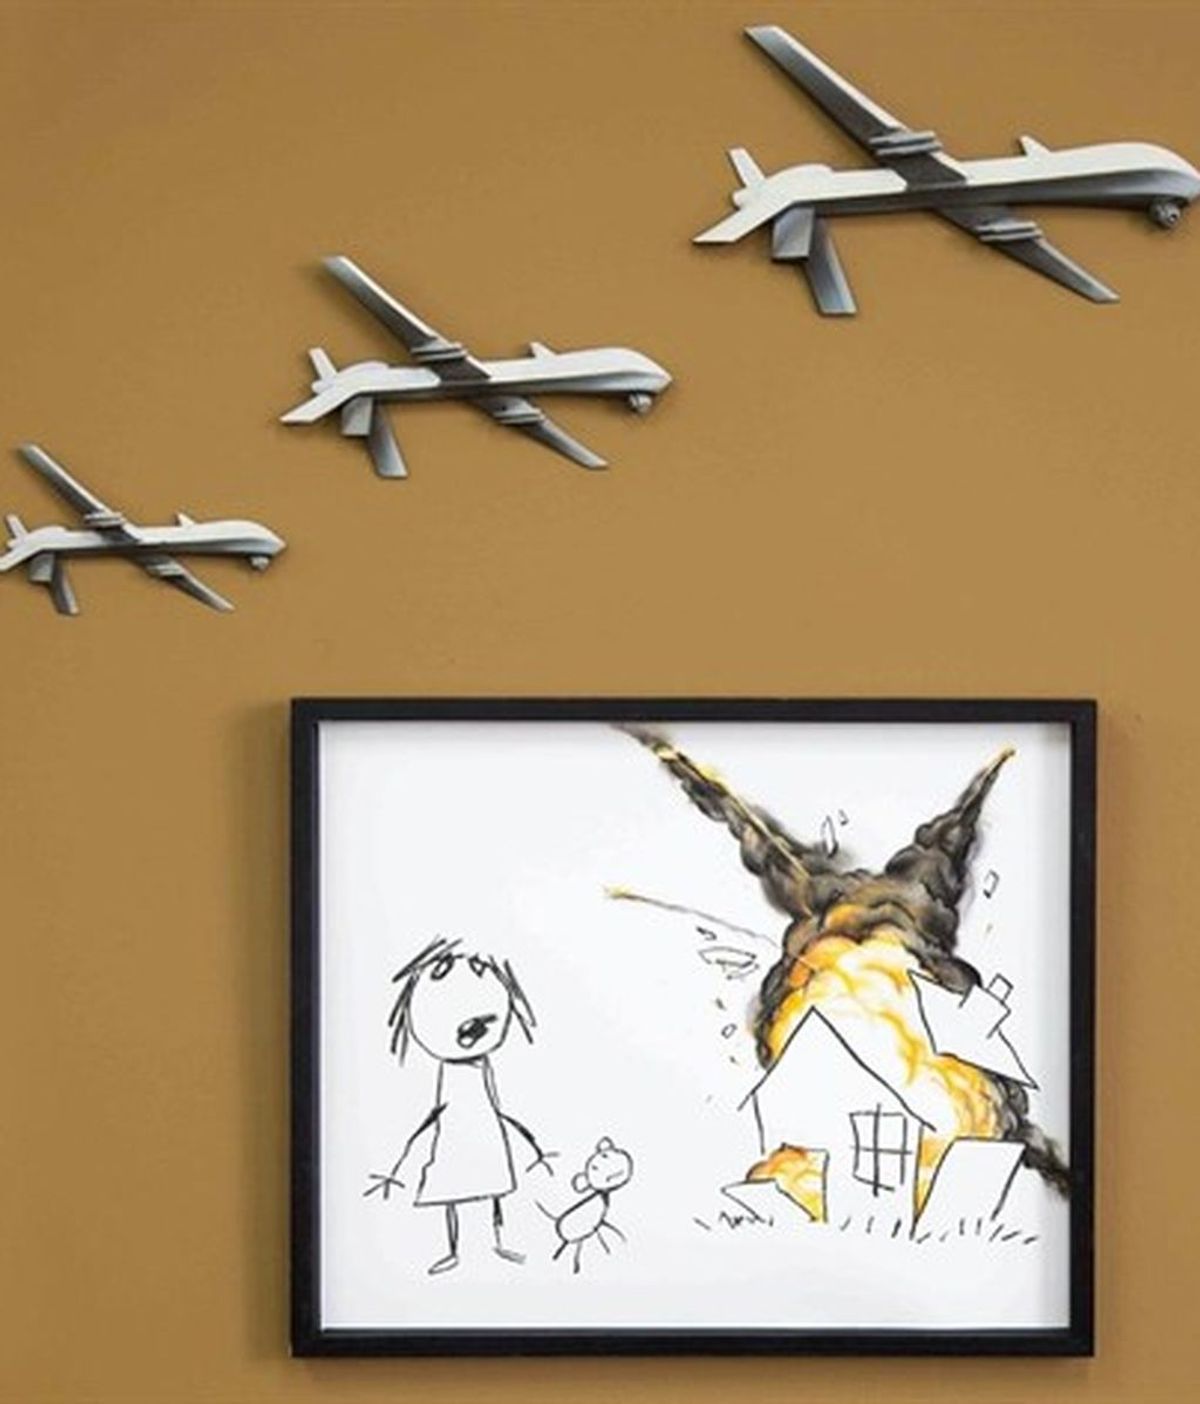 Lo último de Banksy: drones destruyendo el dibujo de una niña